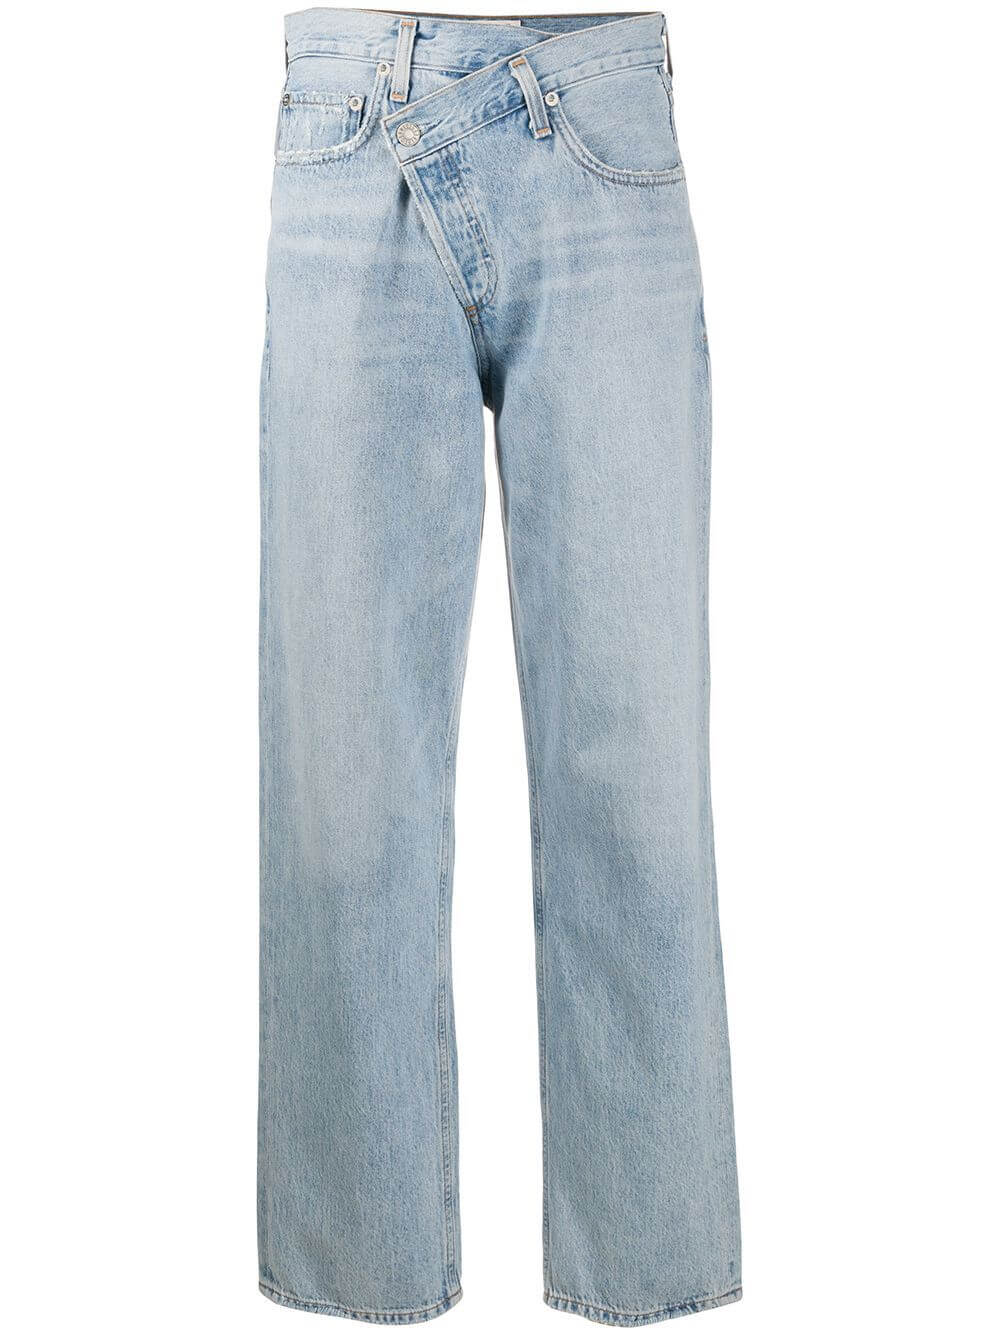  Straight-Jeans mit überkreuztem Bund